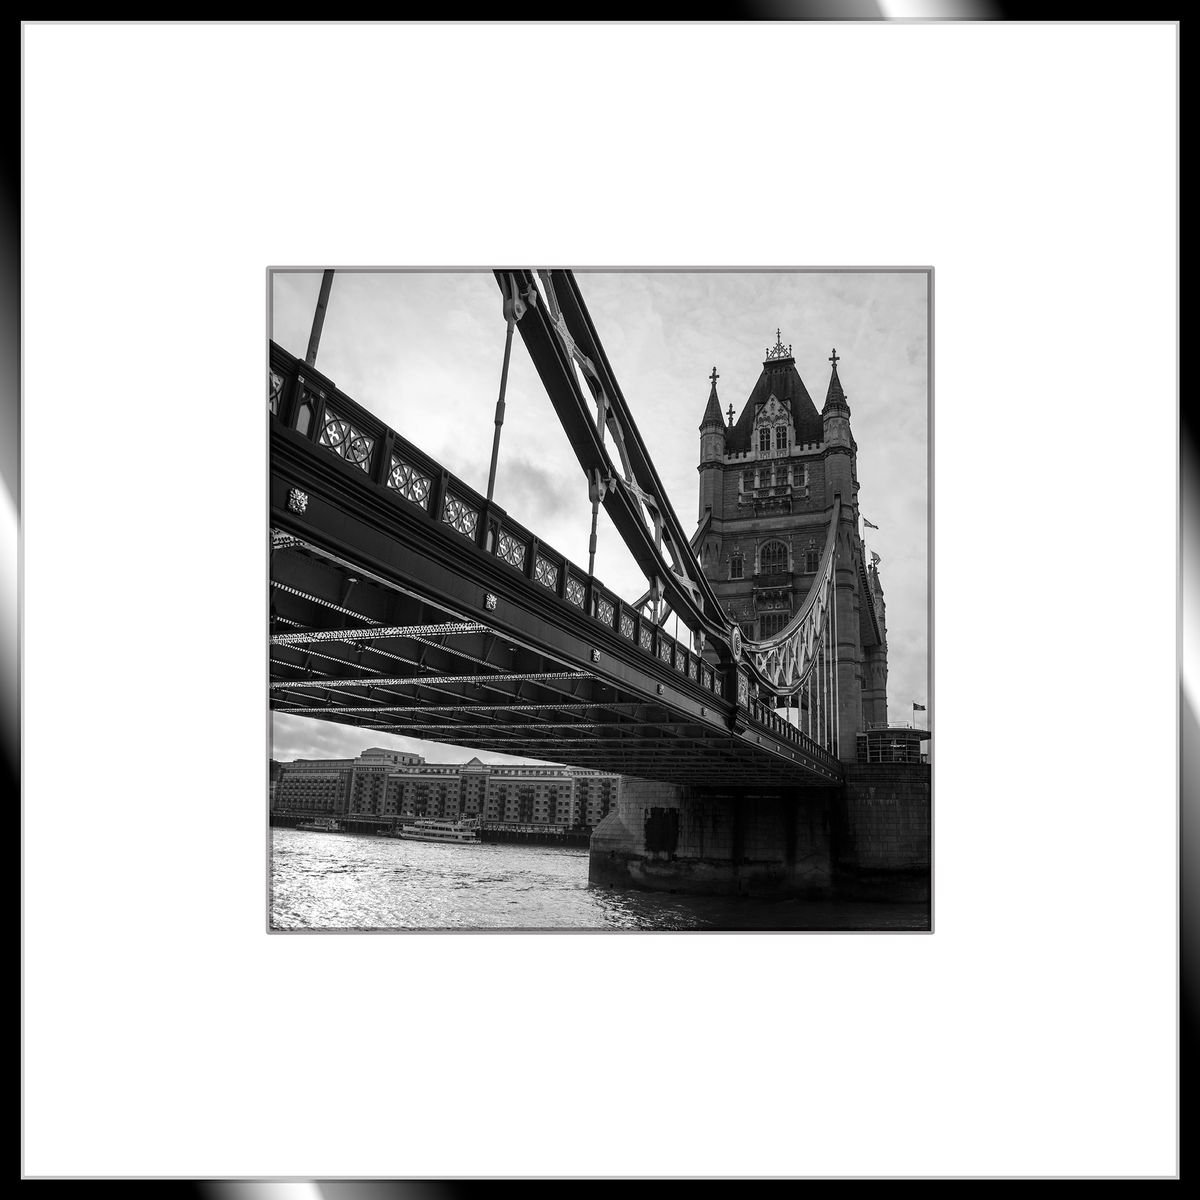 Under The Tower Bridge by Kieran Brimson